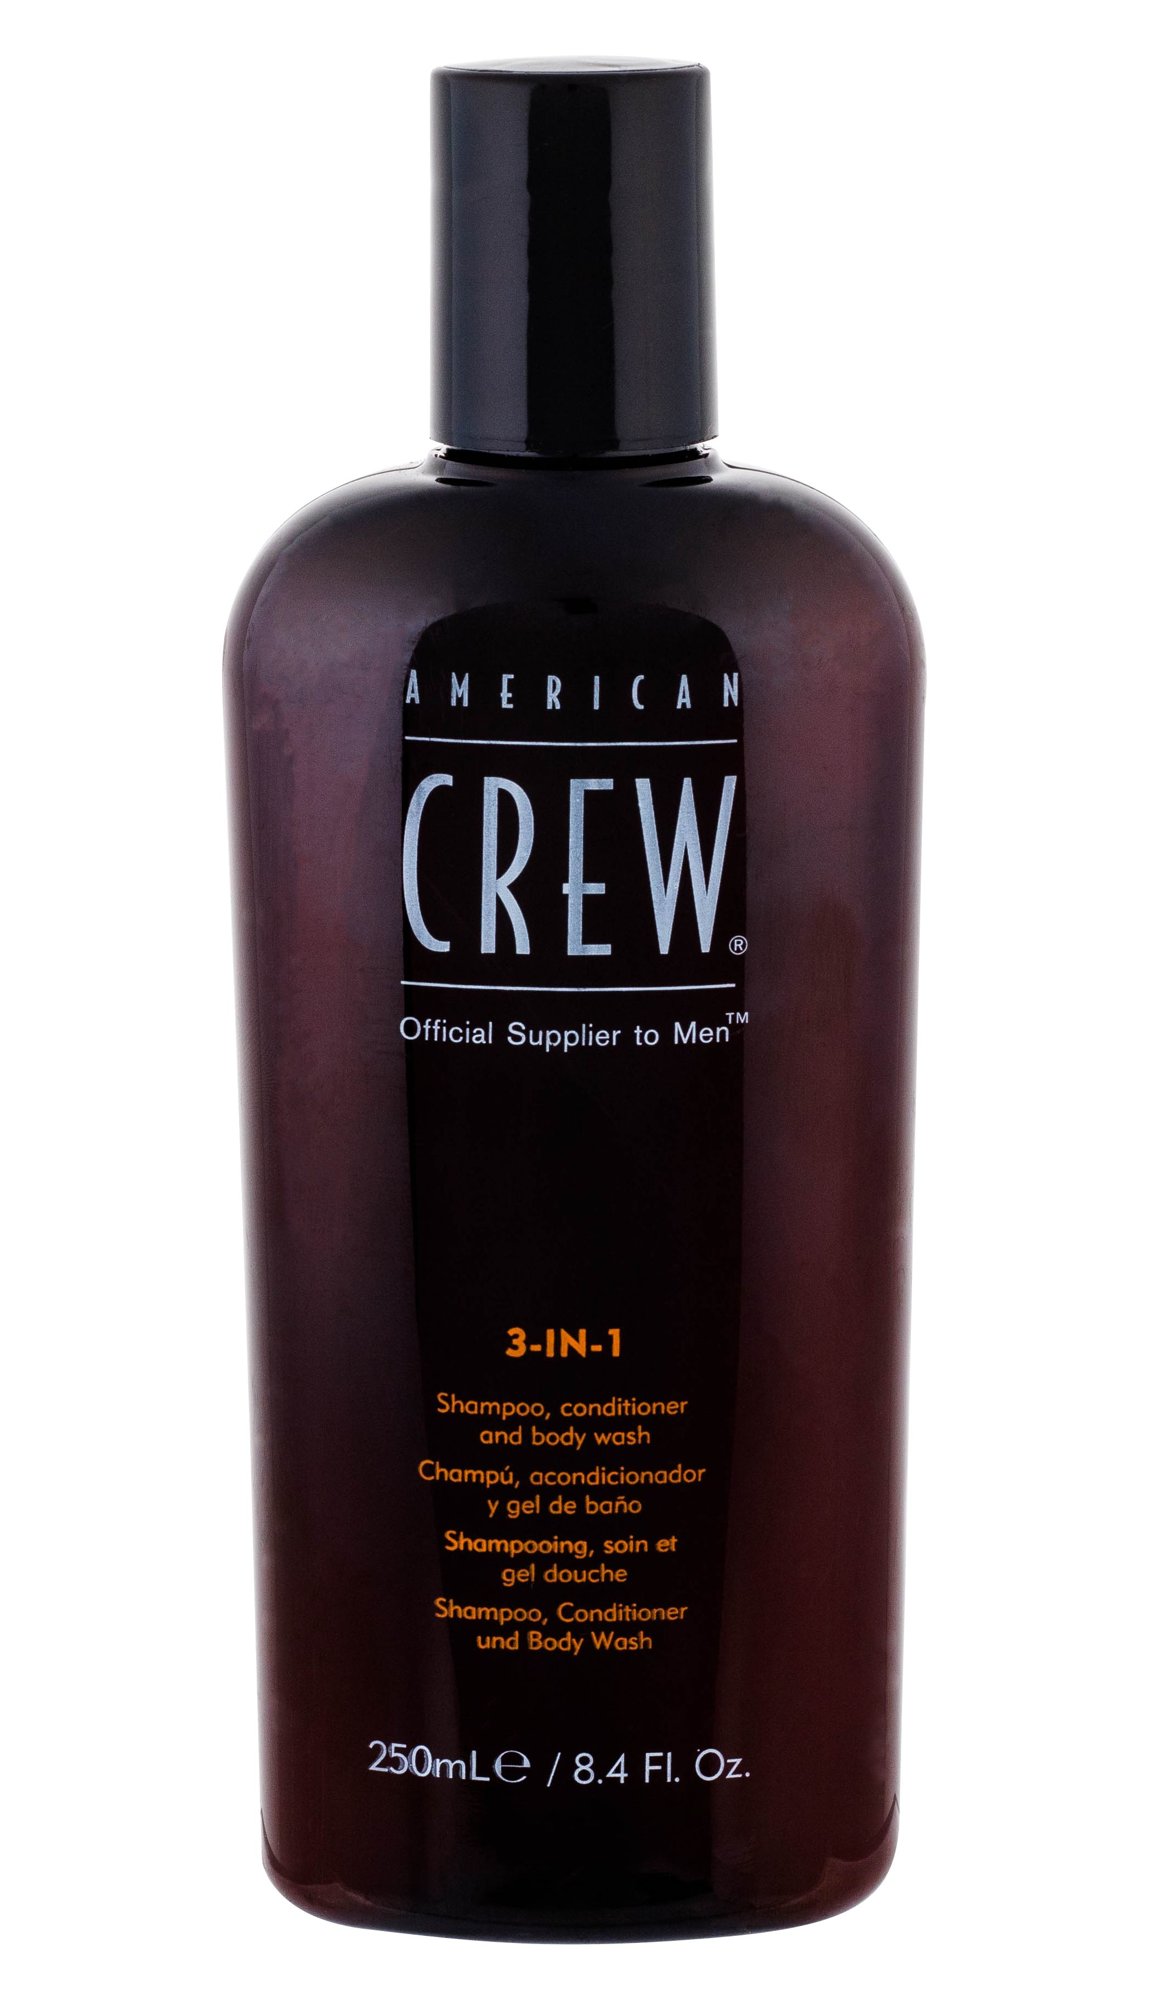 American Crew 3-IN-1 Shampoo, Conditioner & Body Wash